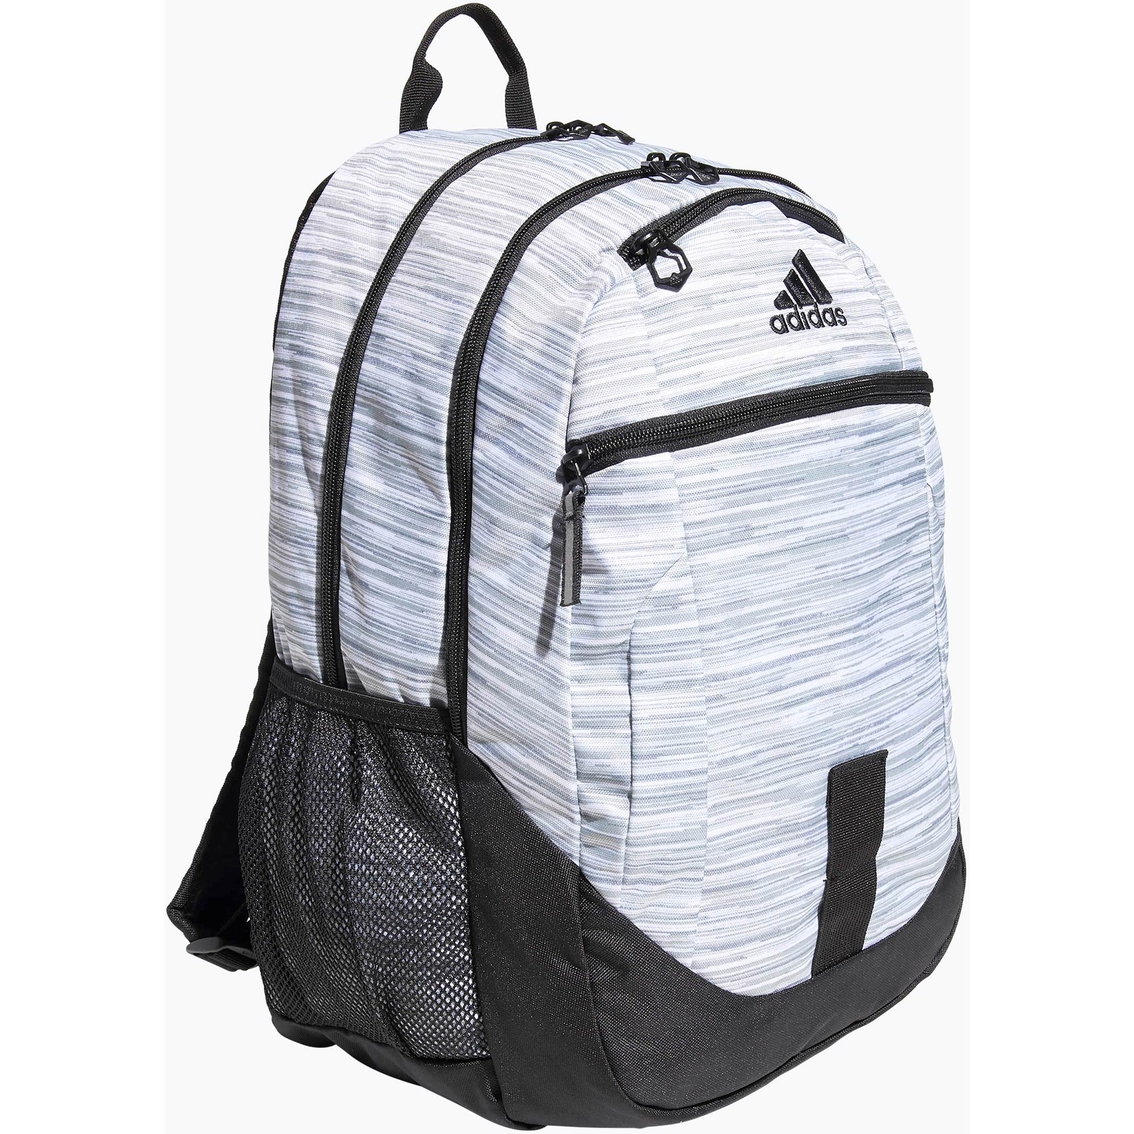 adidas foundation iv backpack white